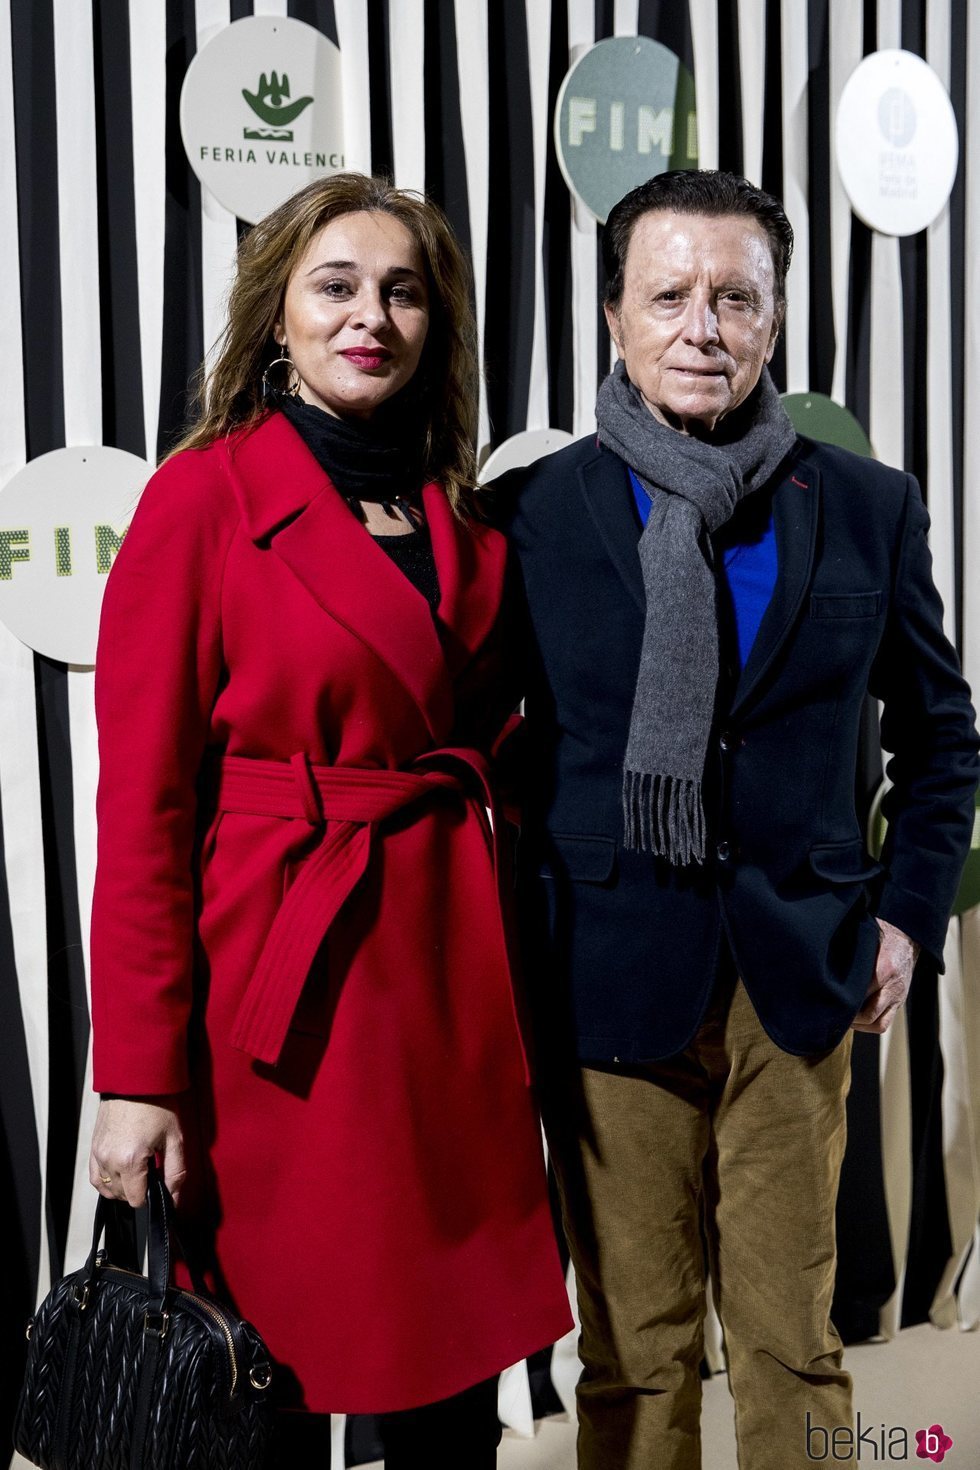 José Ortega Cano y Ana María Aldón acudiendo al FIMI 2019